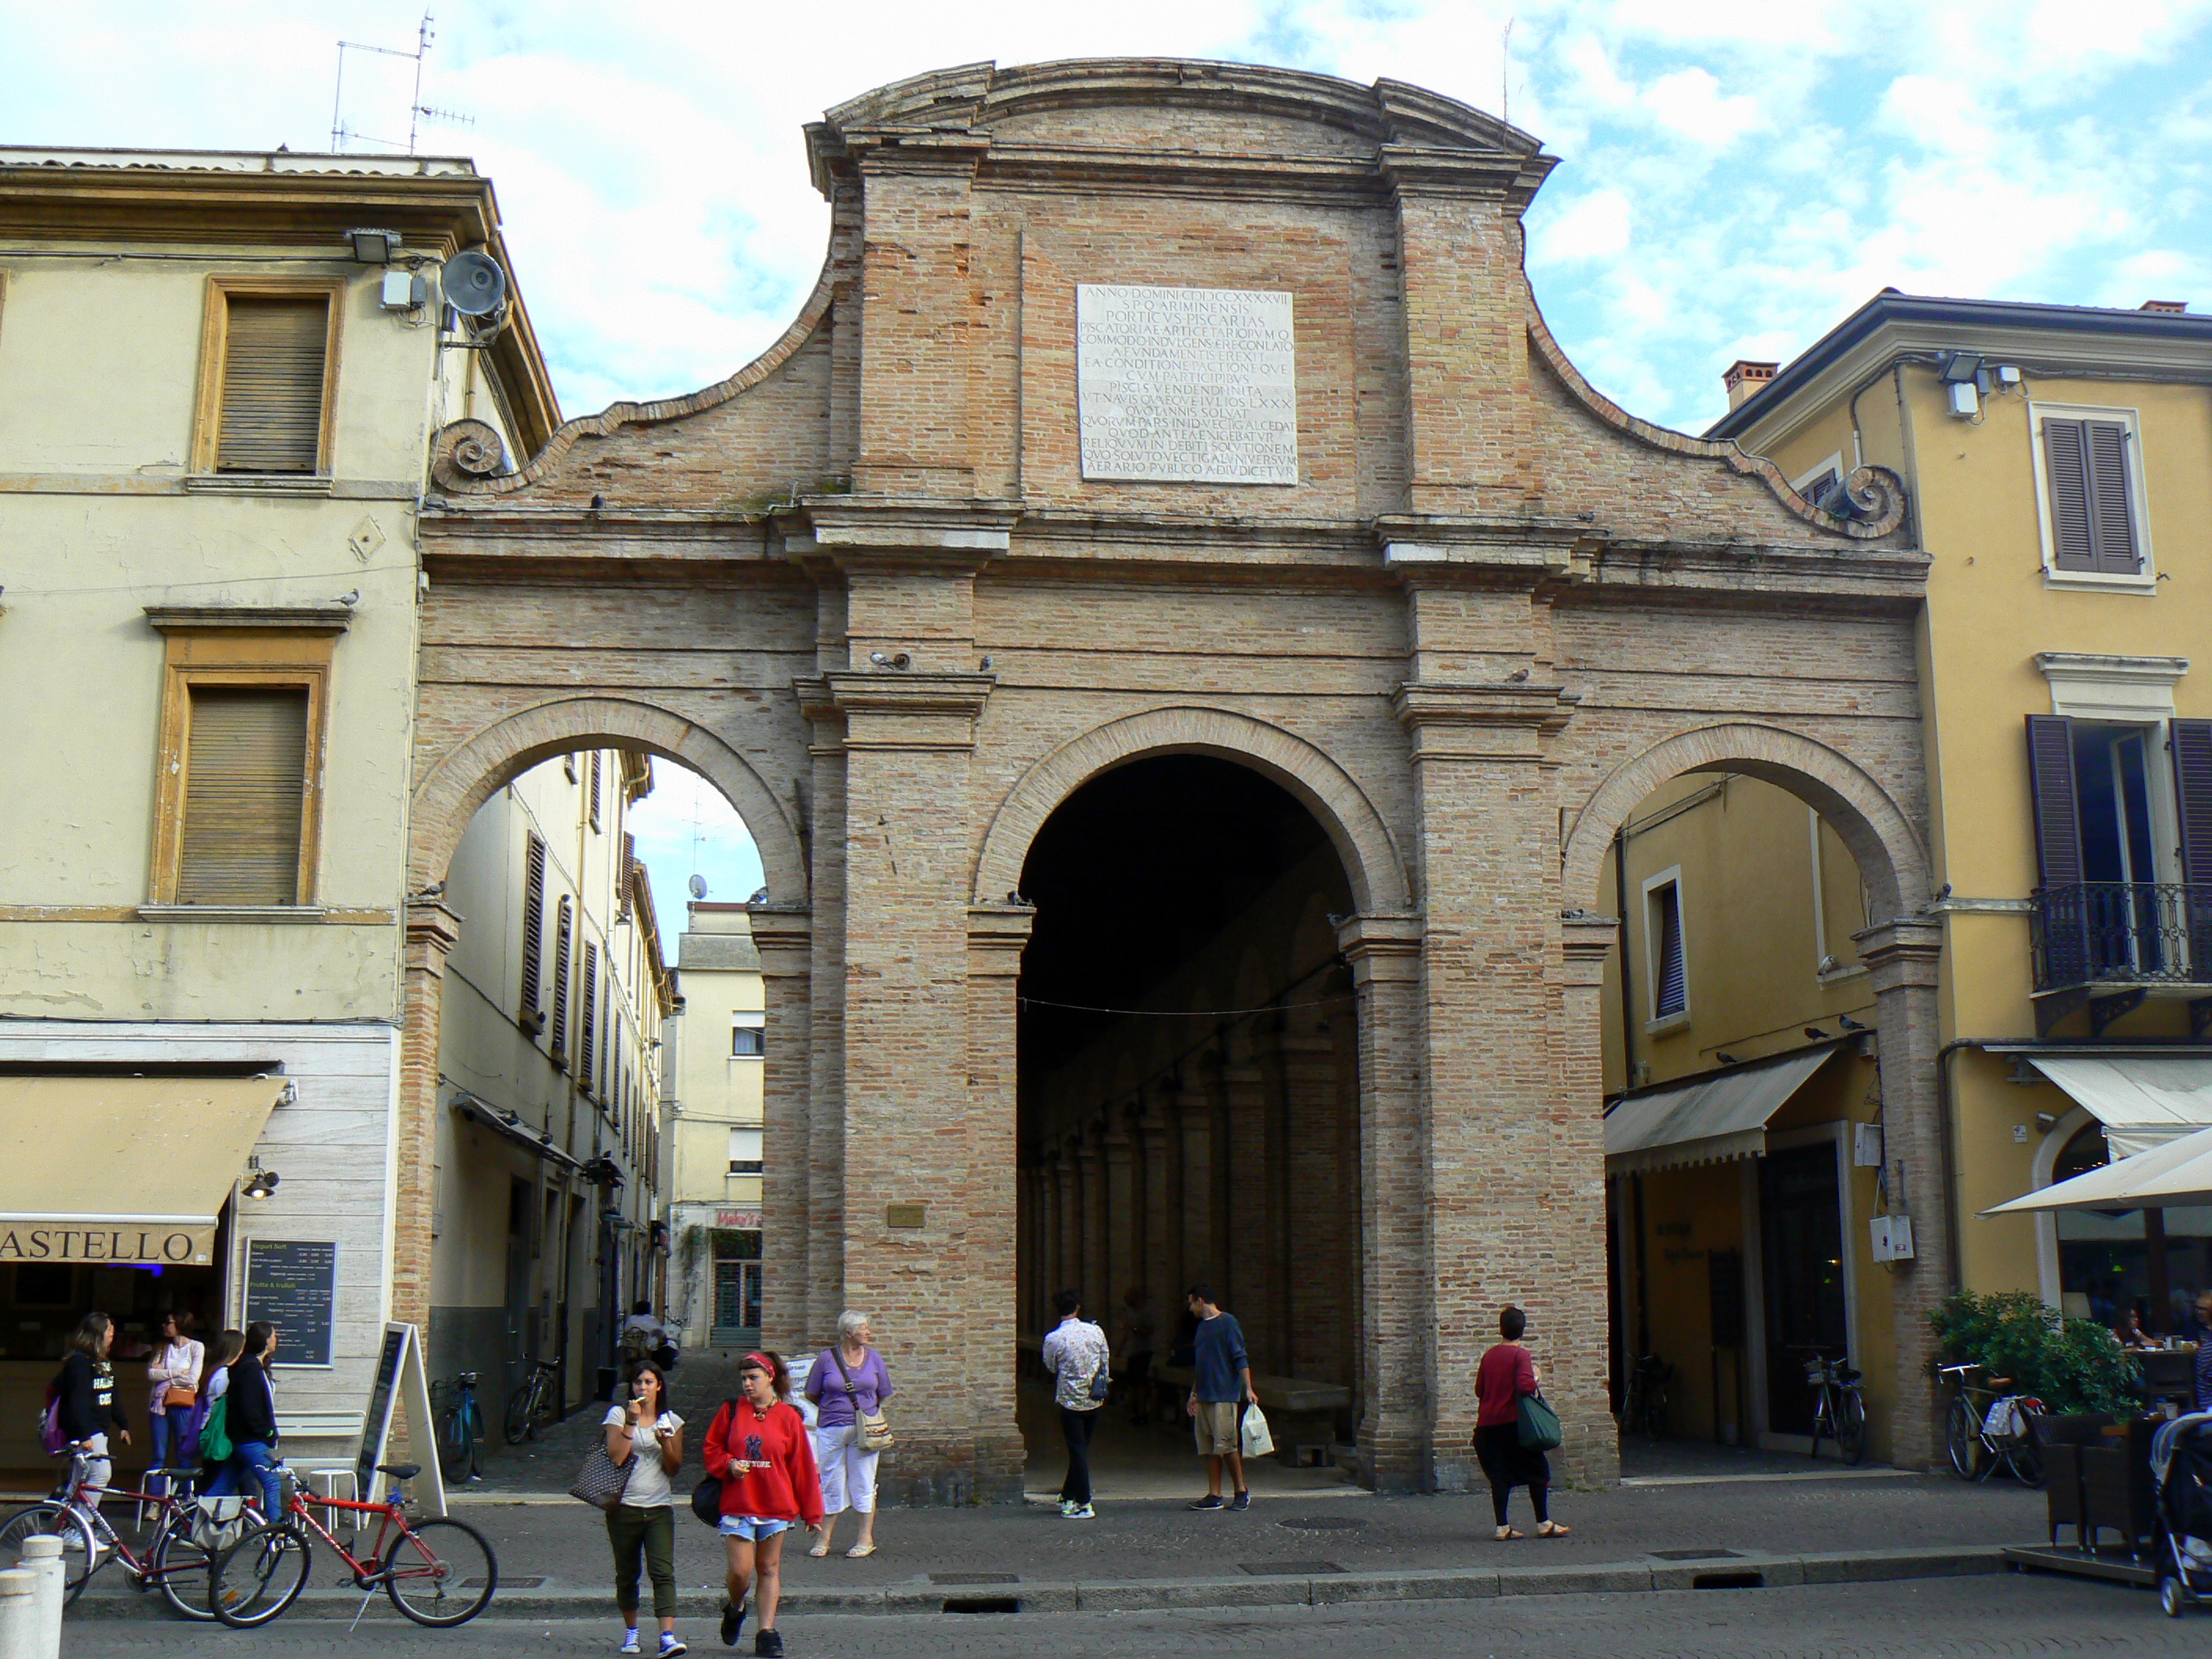 foto: https://upload.wikimedia.org/wikipedia/commons/8/8c/Vecchia_pescheria_-_Rimini.jpg